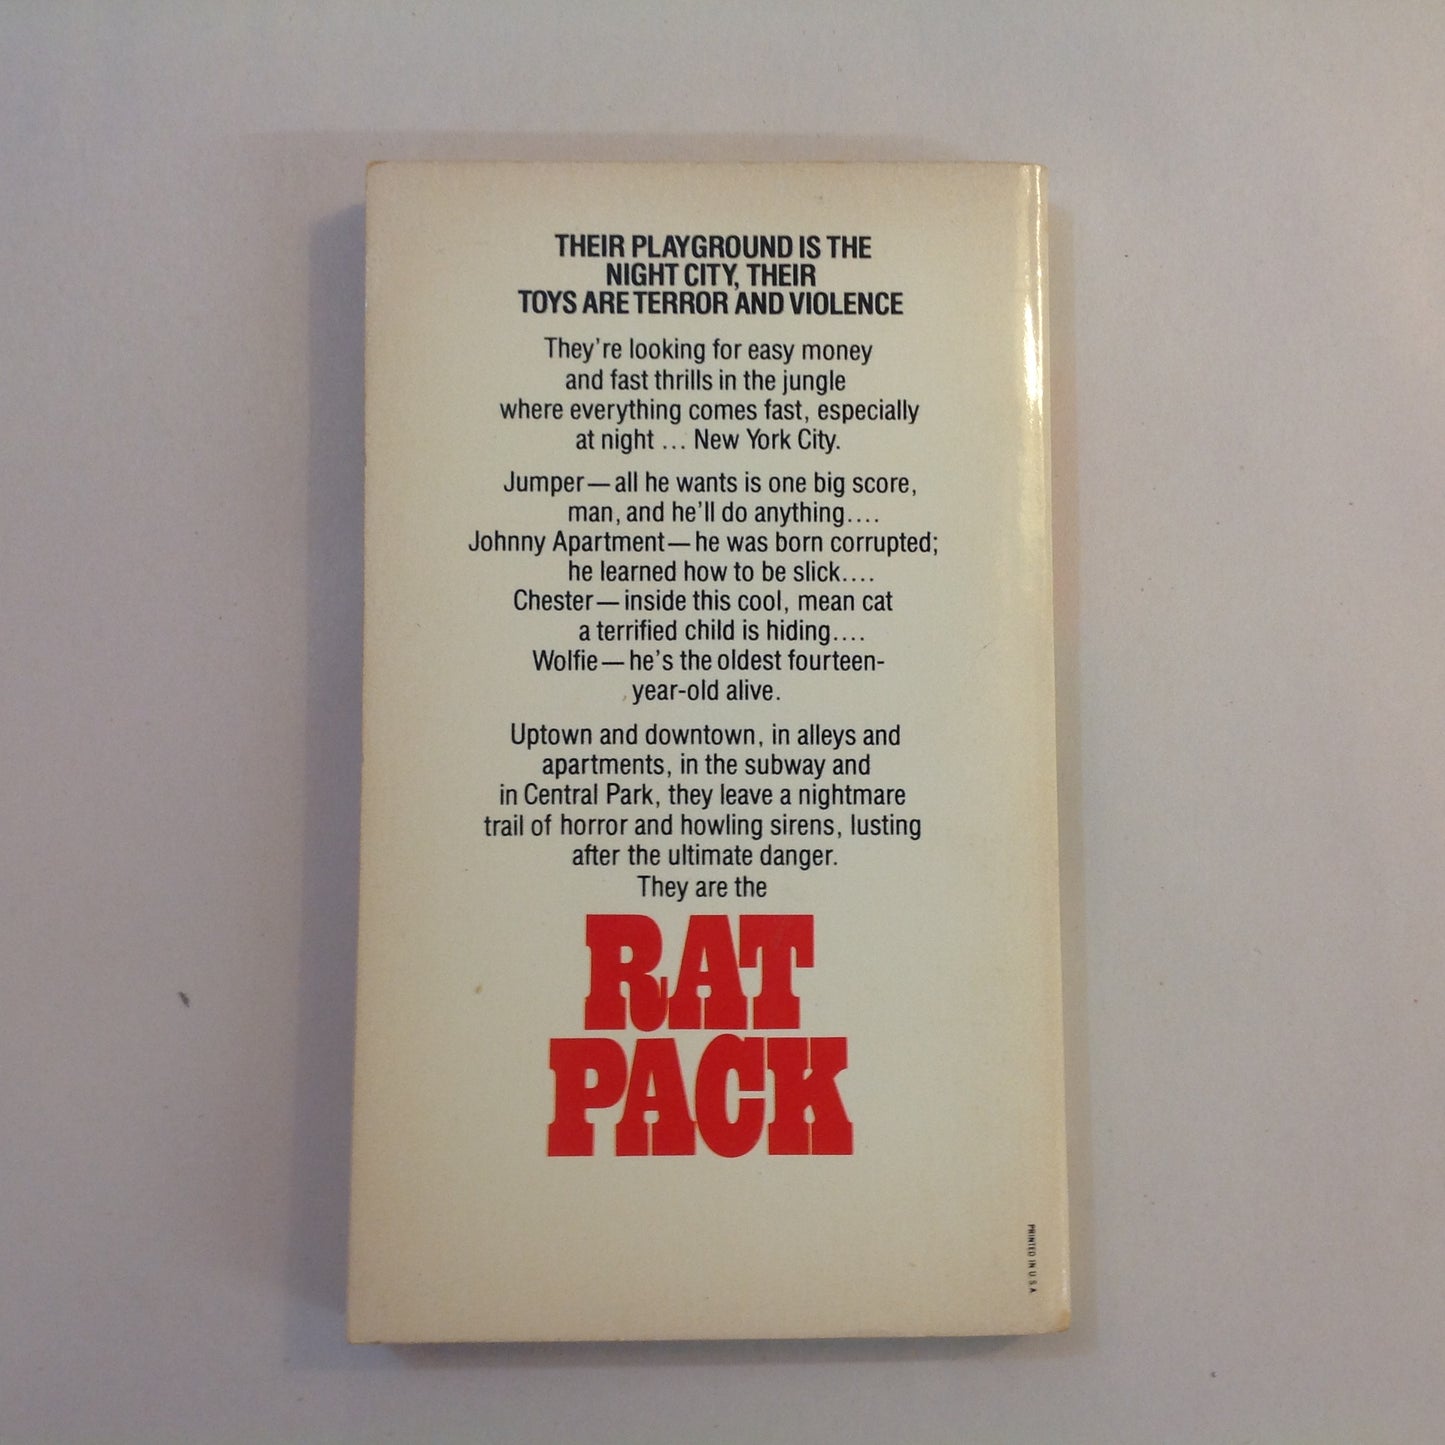 Vintage 1975 Mass Market Paperback RAT PACK Shane Stevens